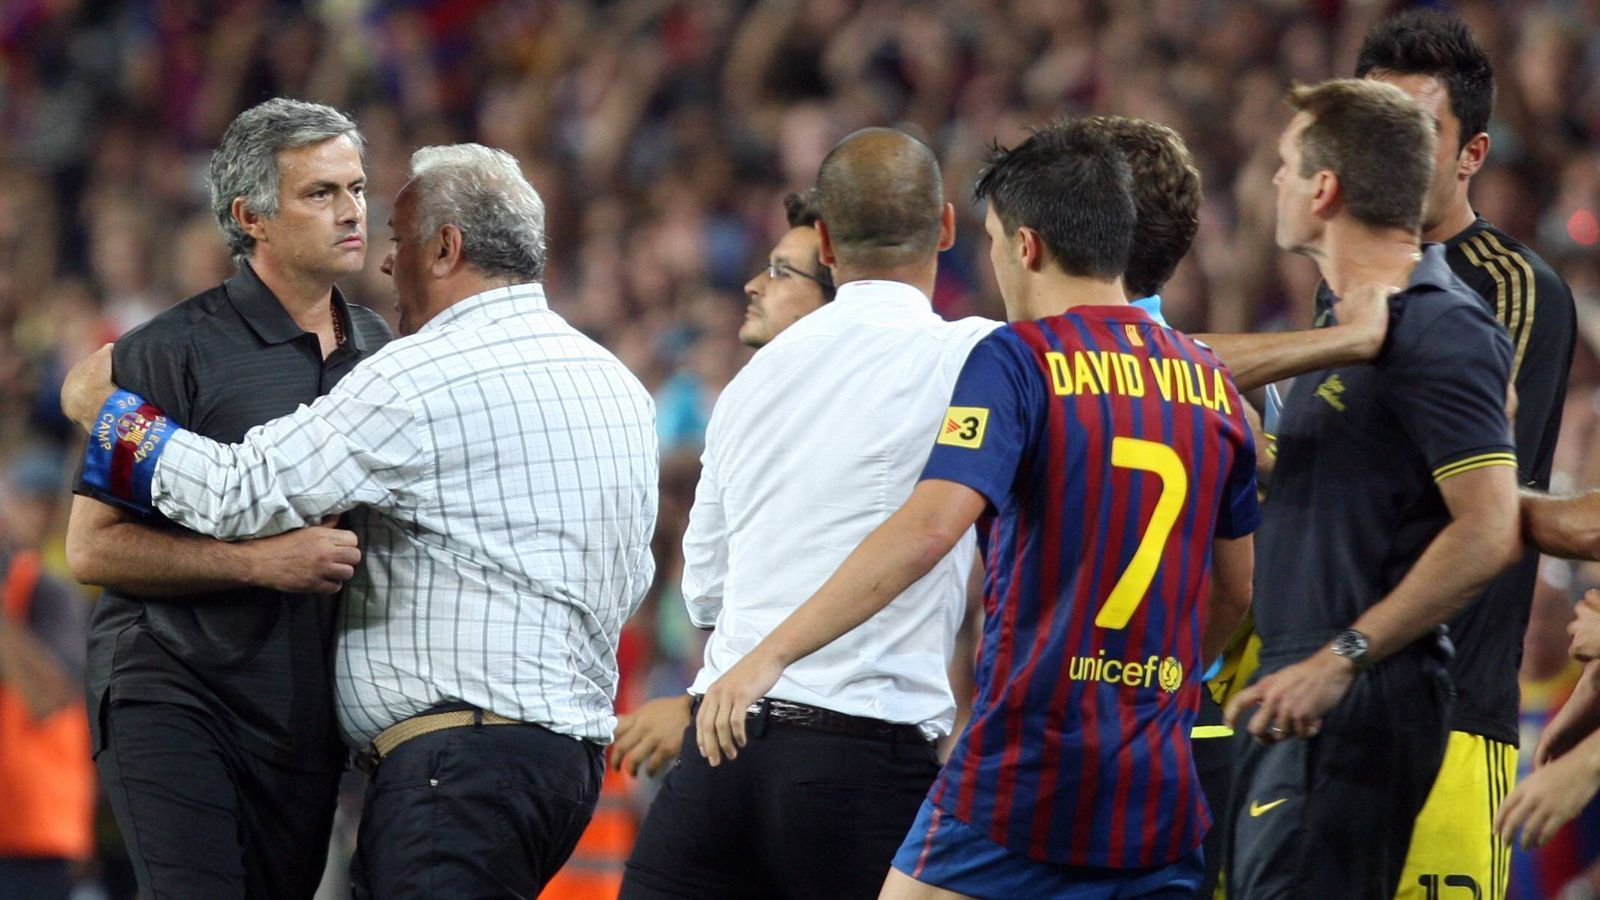 
                <strong>Stich ins Auge</strong><br>
                Im August 2011 stand der nächste Clasico an, wieder ging es hoch her. Bei einer Rudelbildung nach dem Spiel stach Mourinho dem damaligen Barca-Co-Trainer Tito Vilanova (r.) mit dem Finger ins Auge. Dafür wurde er zwei Spiele gesperrt.
              